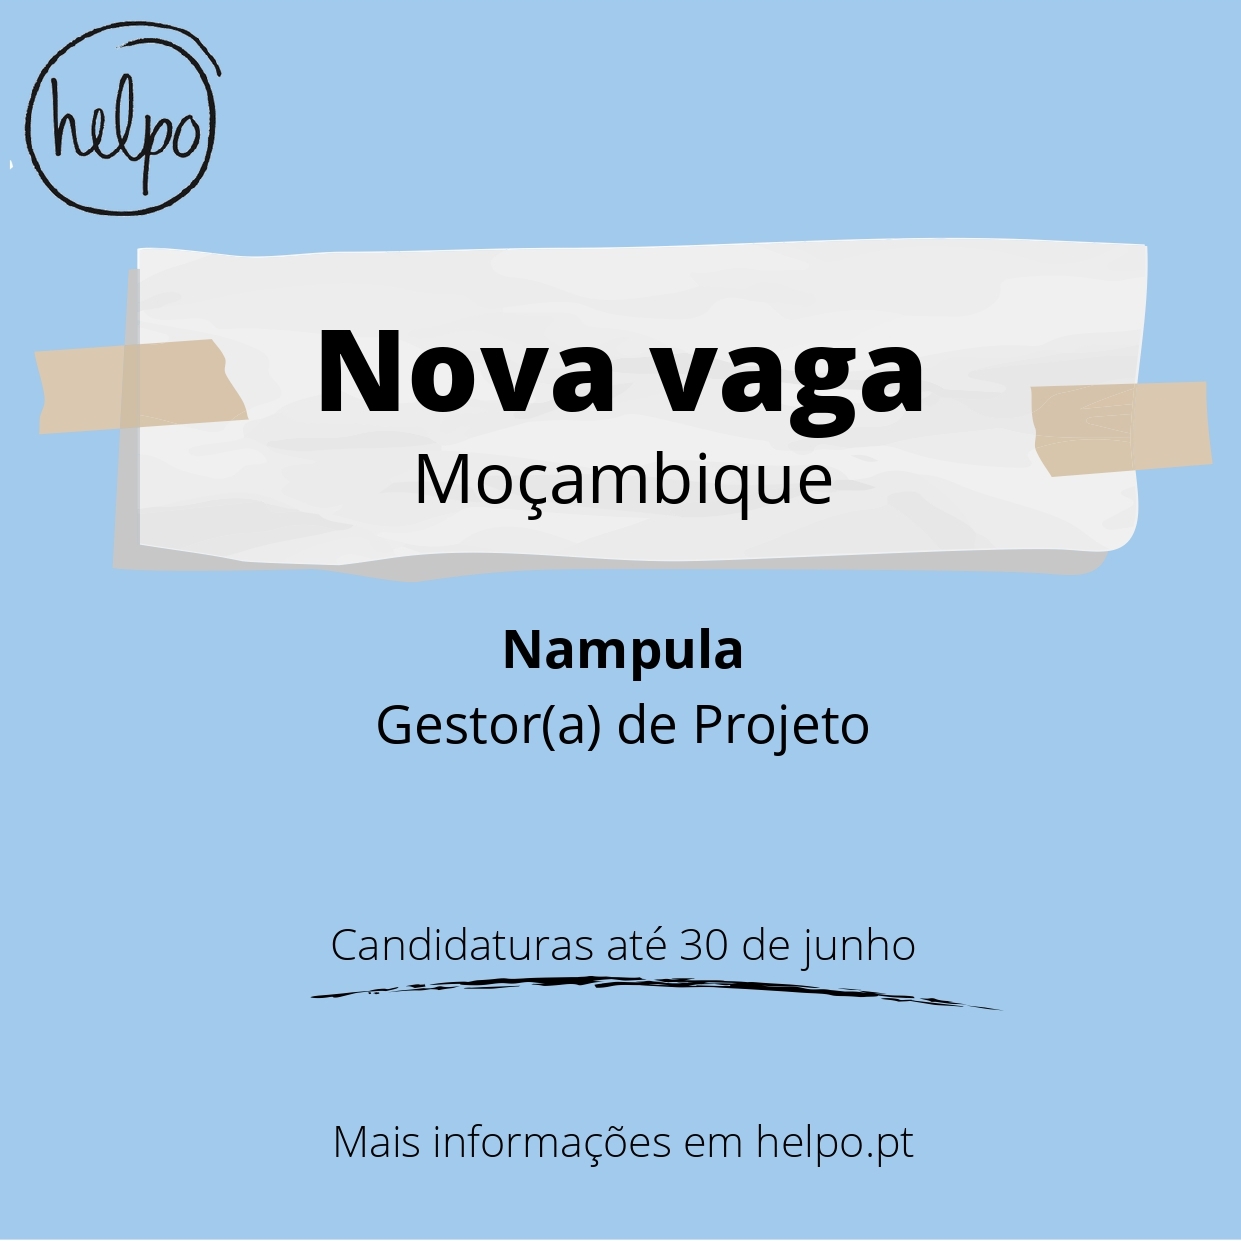 Nova Vaga para Moçambique